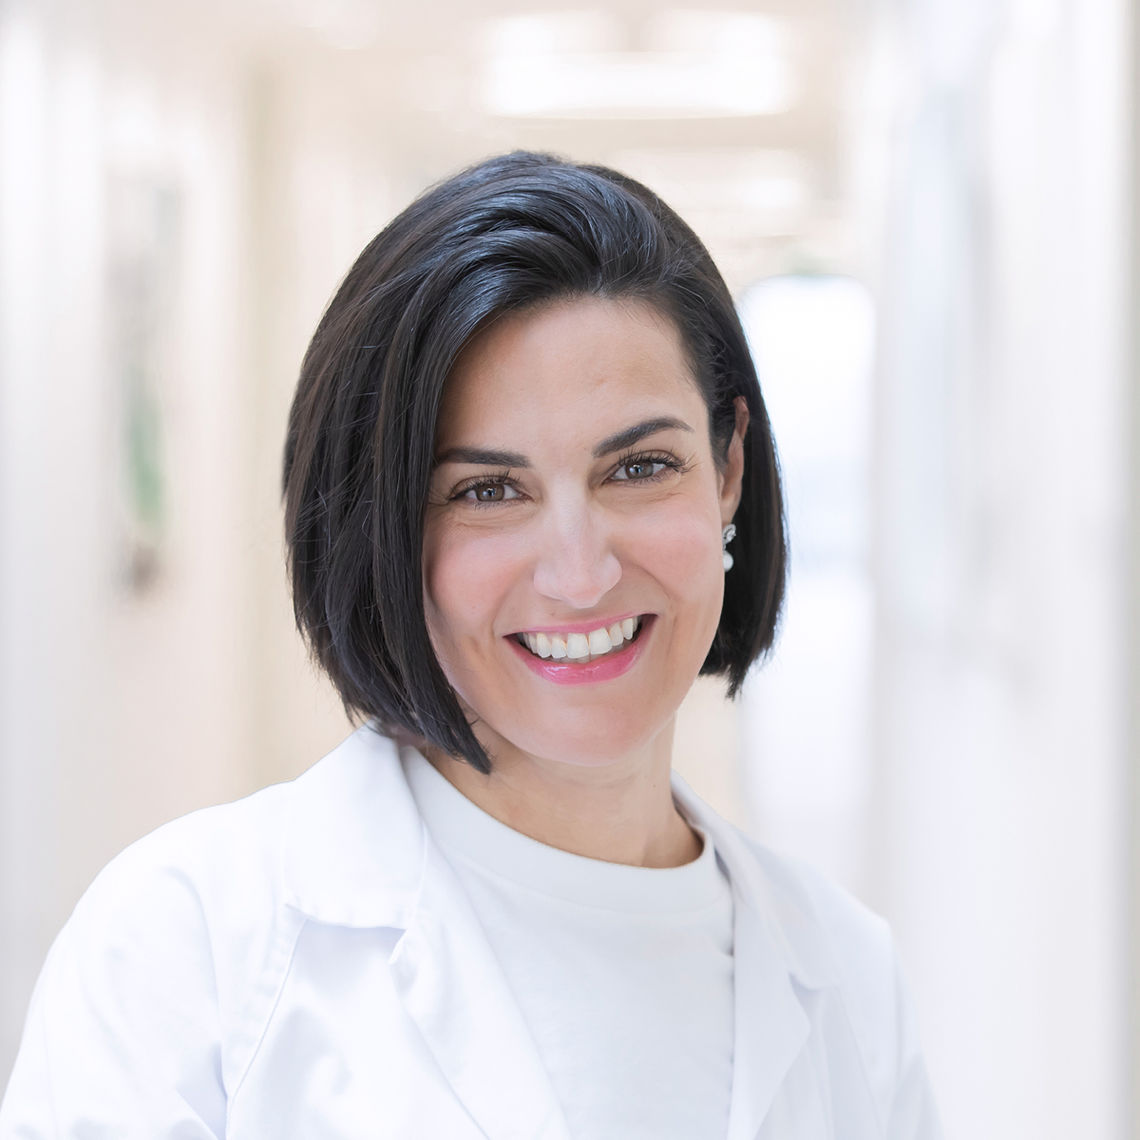 Dr. Sarah Moussa